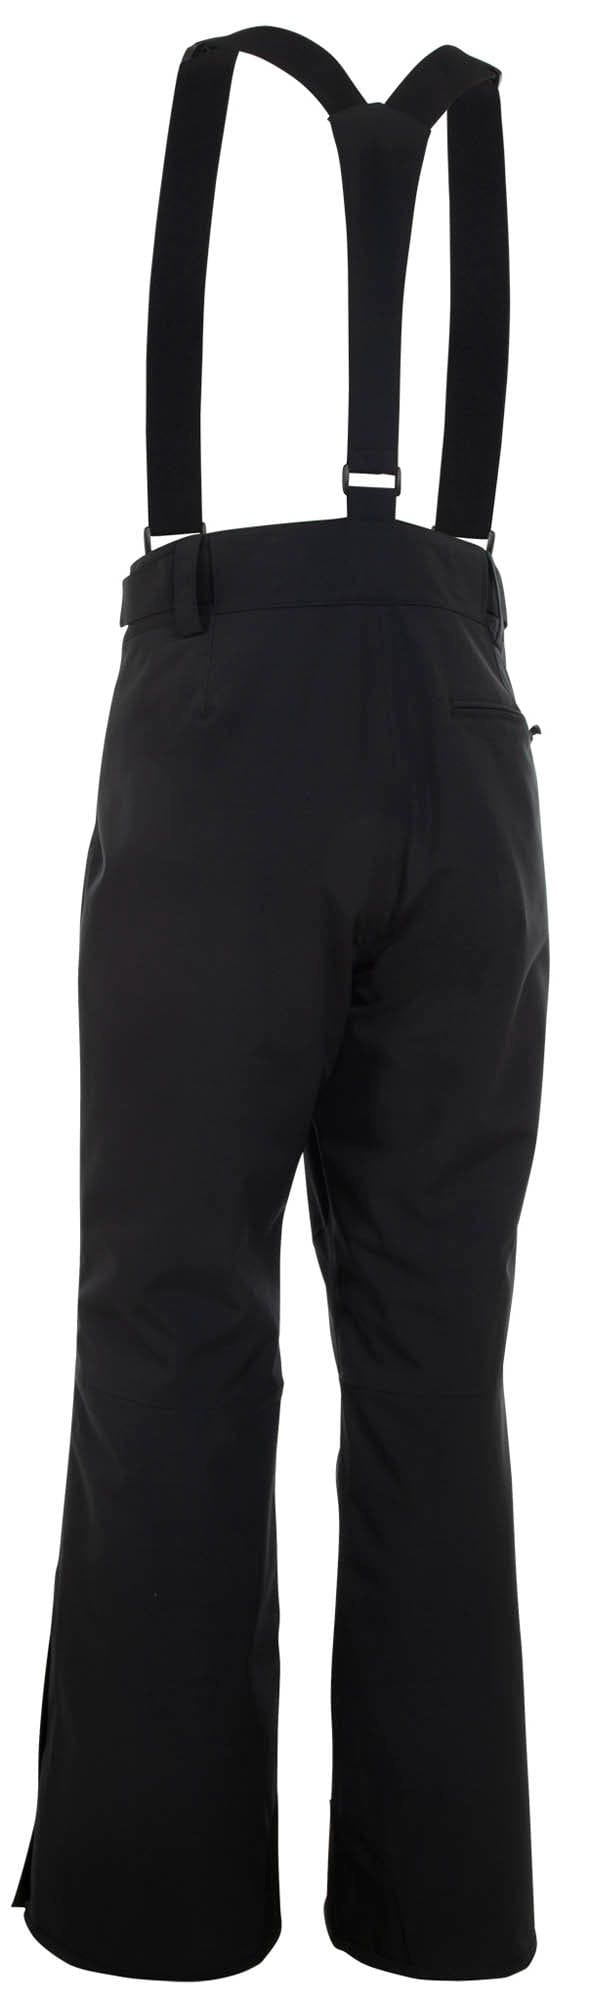 Sunice CLOTHING - Men - Outerwear - Pant Sunice *23W*  Men's Brett Overall Ski Pants  - Inseam 32" -